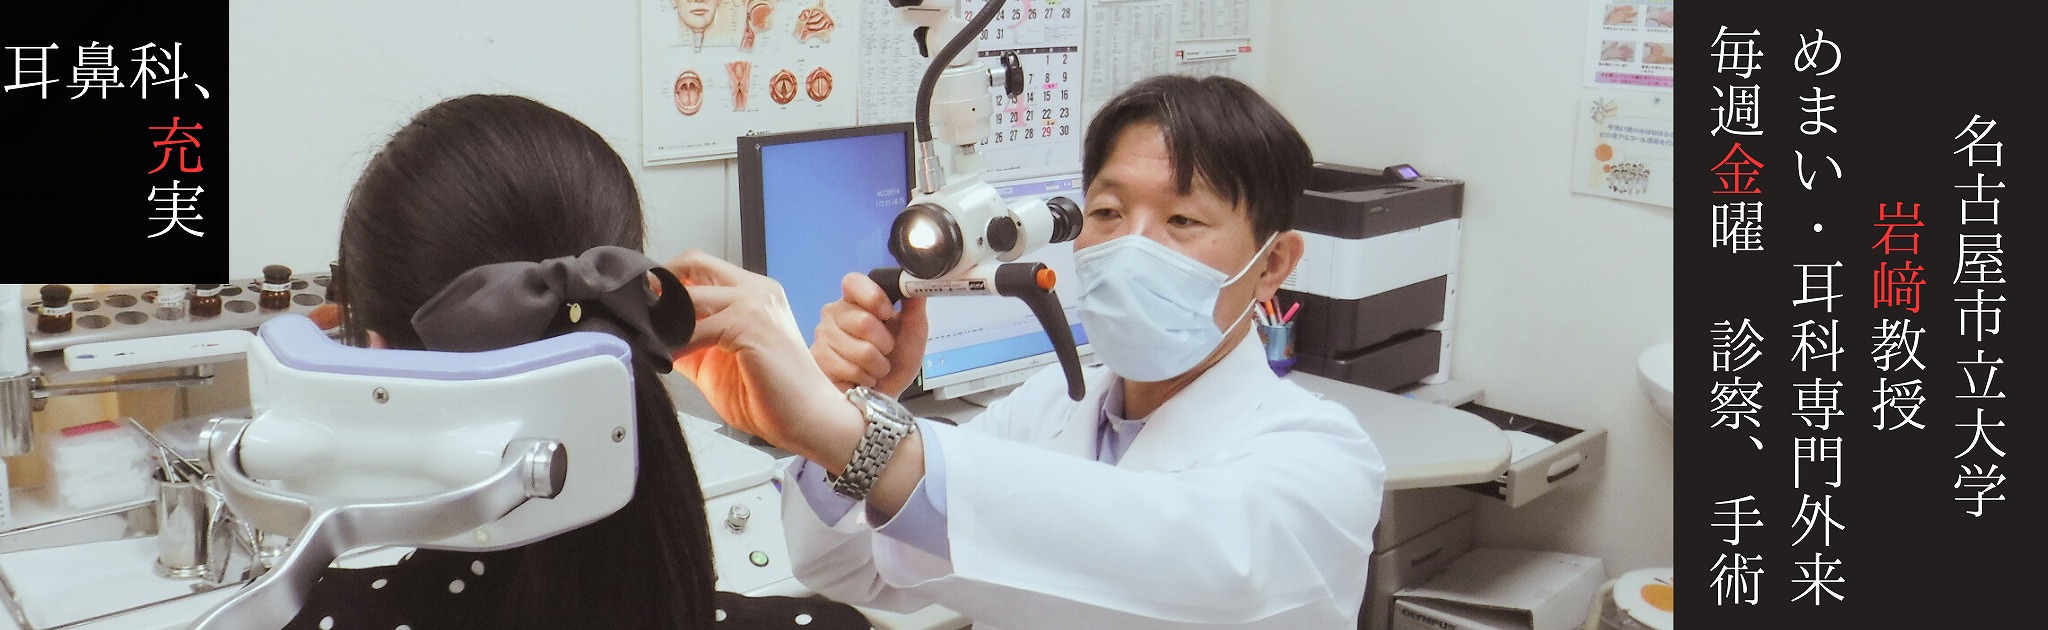 耳鼻科、充実。名古屋市立大学の岩﨑教授が毎週金曜日に診察や手術をおこなっています。